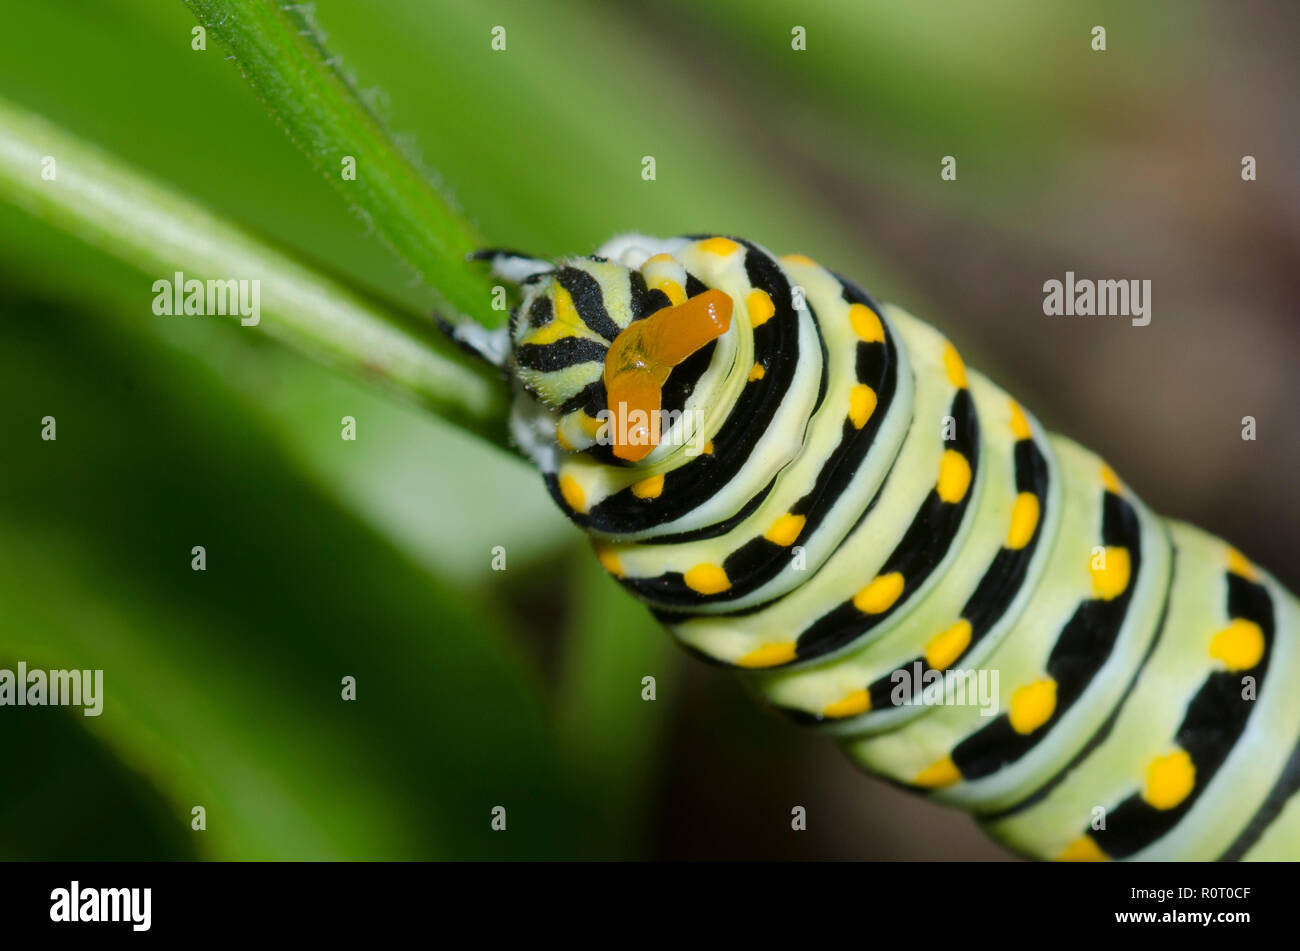 Nero a coda di rondine, Papilio polyxenes, caterpillar con osmeterium parzialmente rovesciato Foto Stock